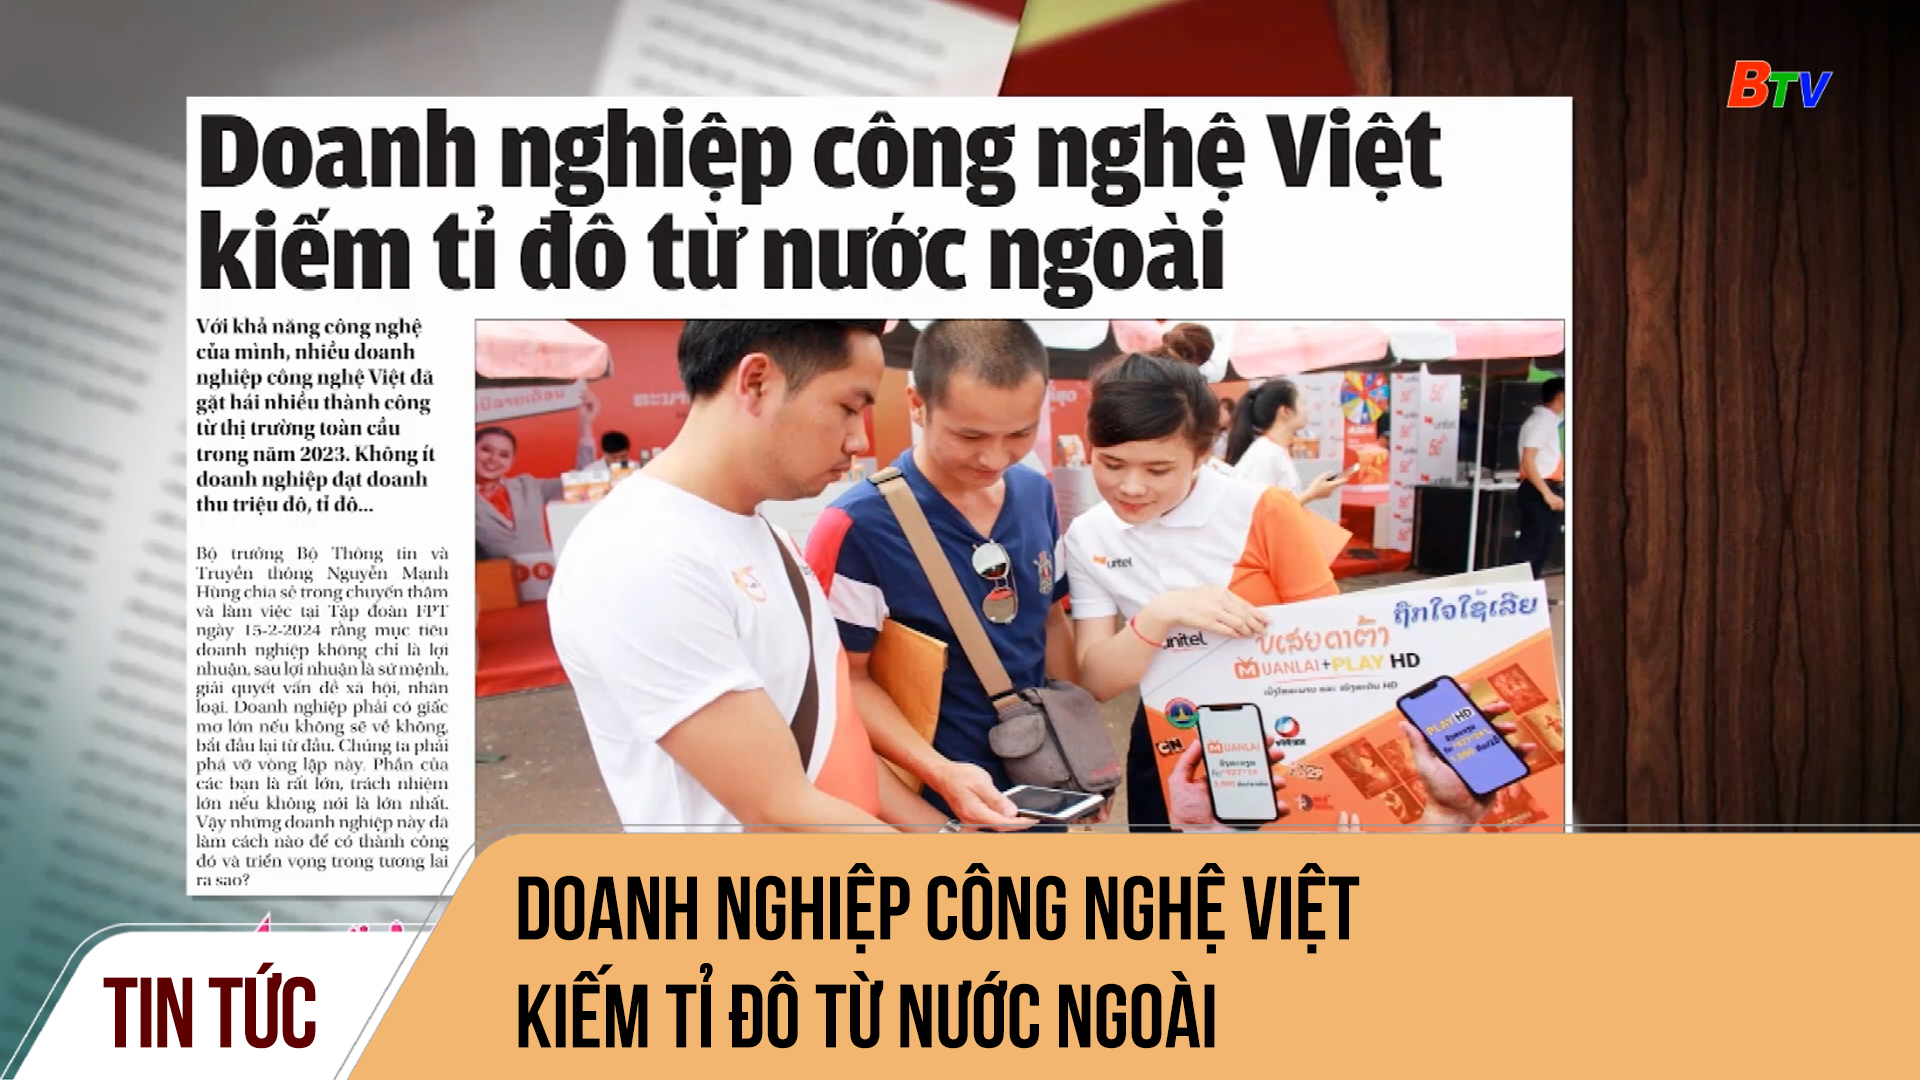 Doanh nghiệp công nghệ Việt kiếm tỉ đô từ nước ngoài